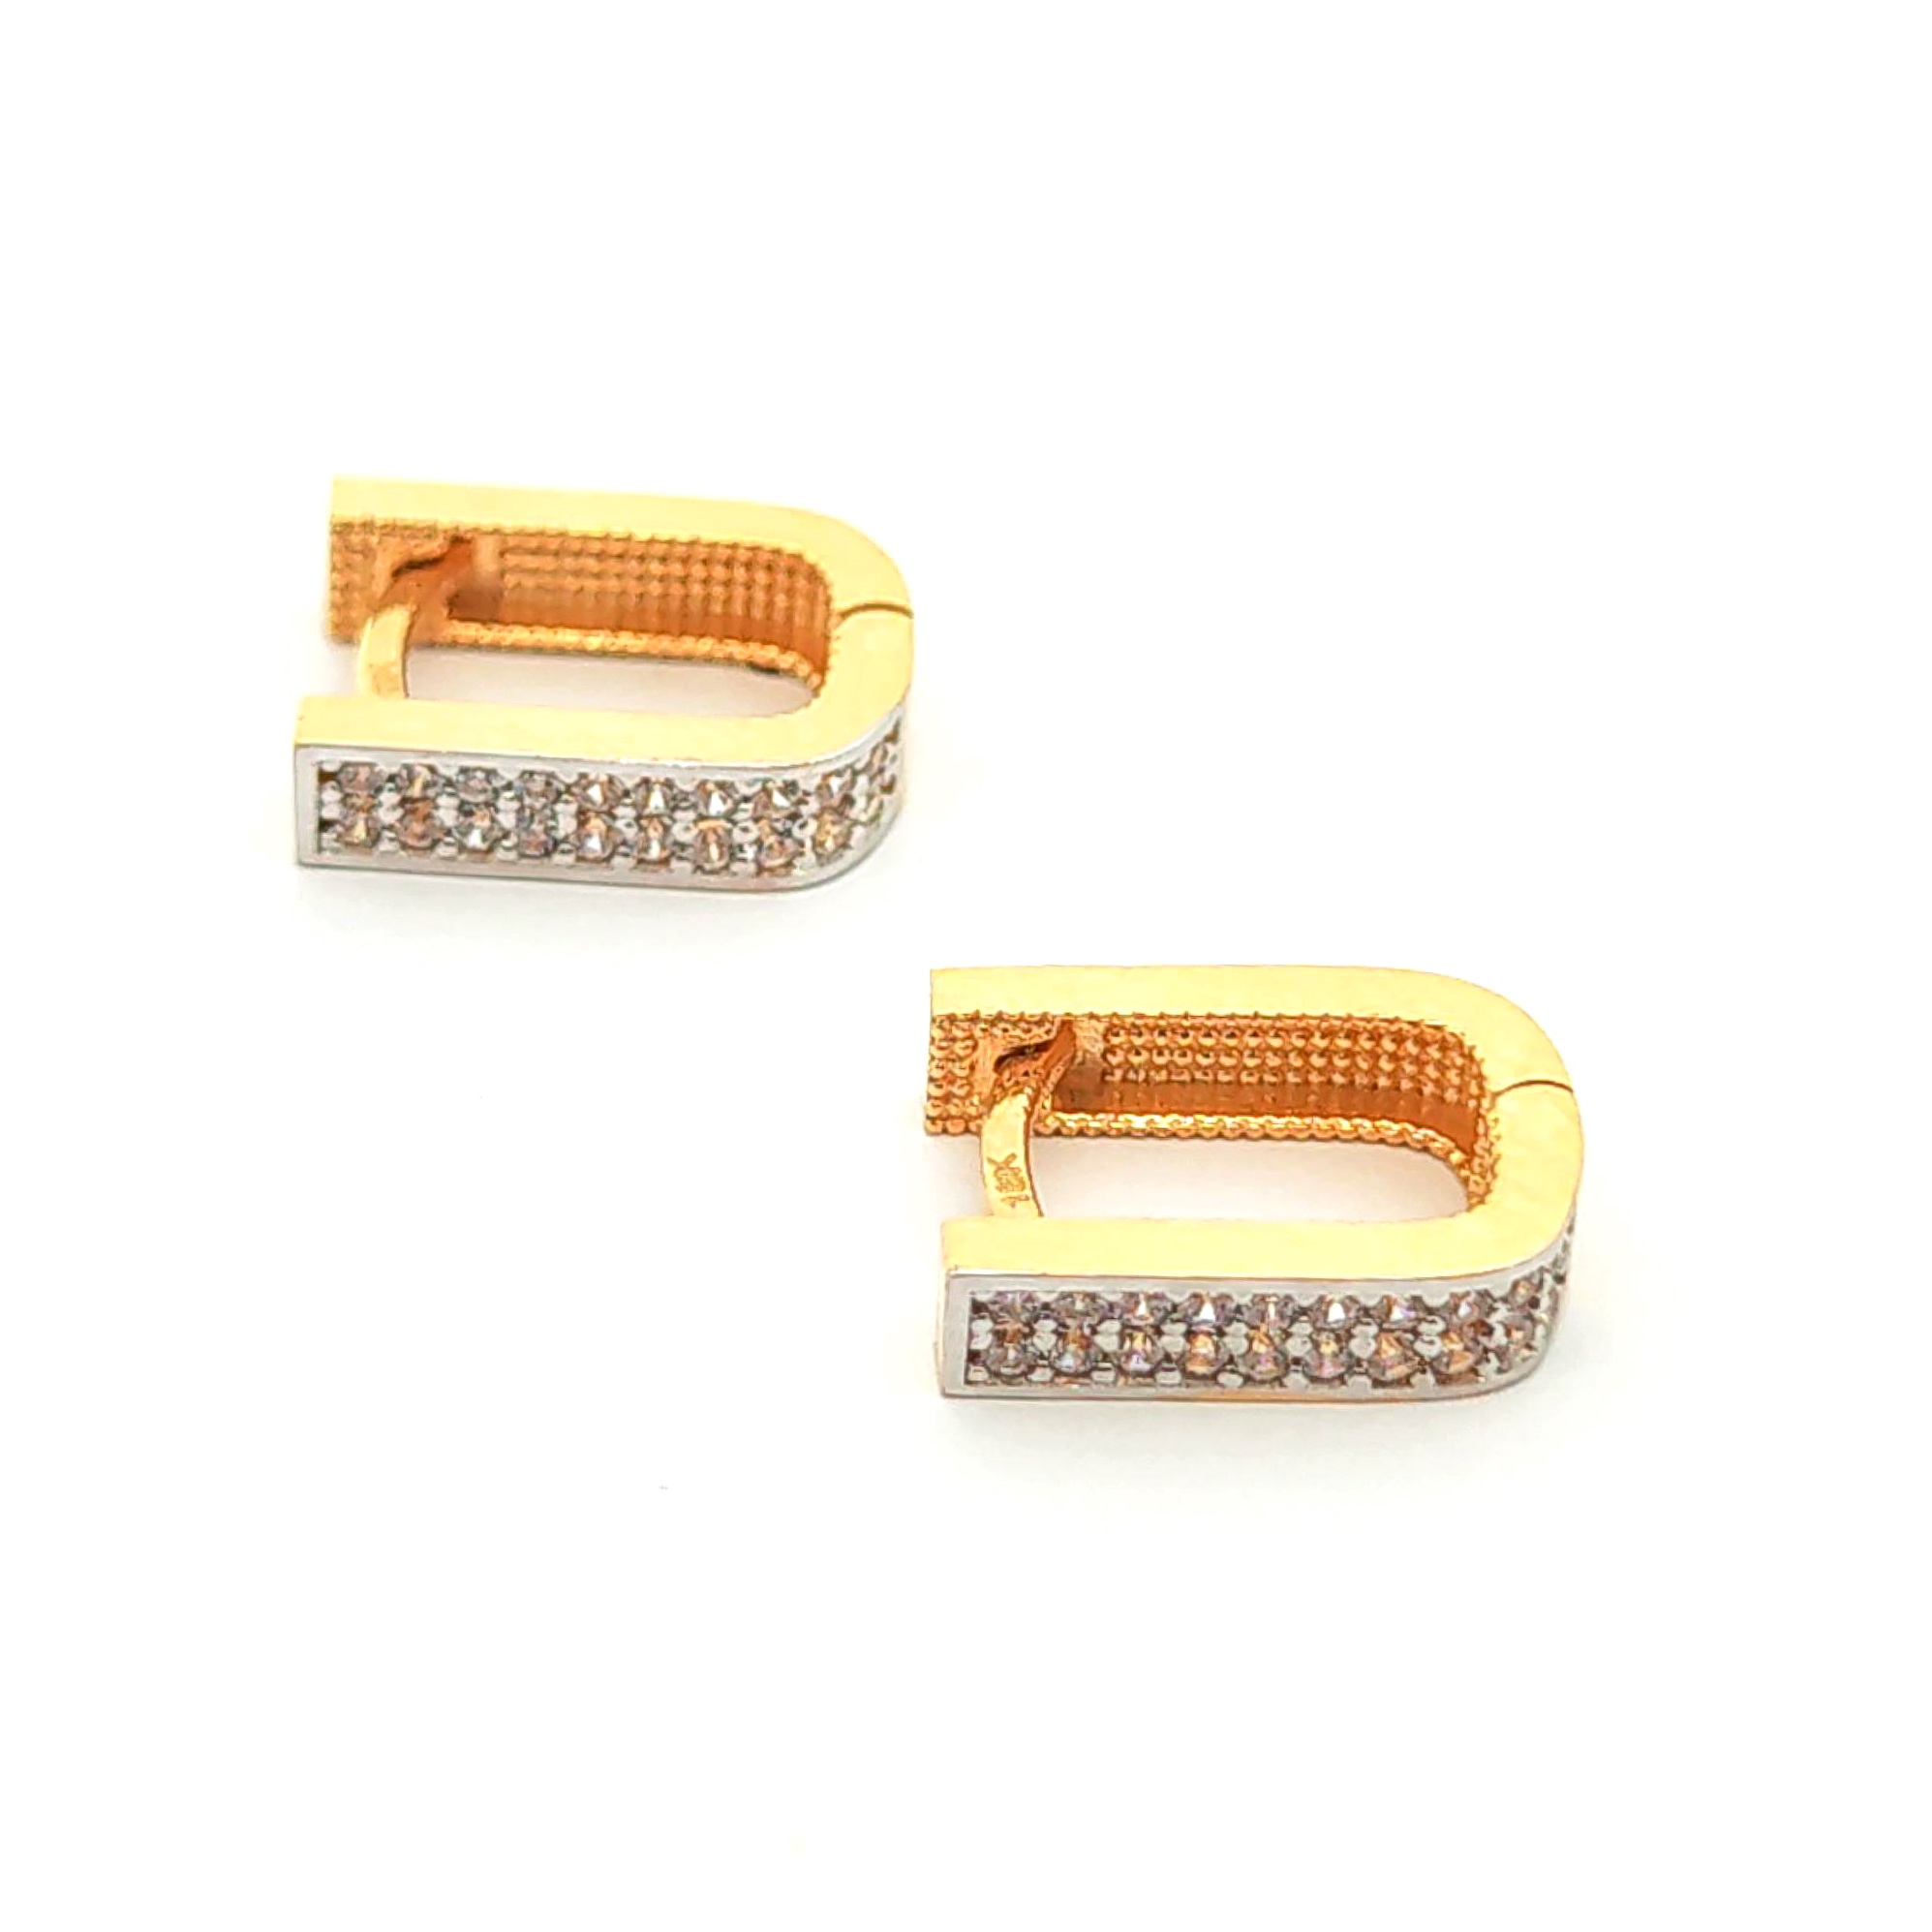 Aros de oro 18k diseño ovalado con 2 filas de circones, peso 3,13 grs 2